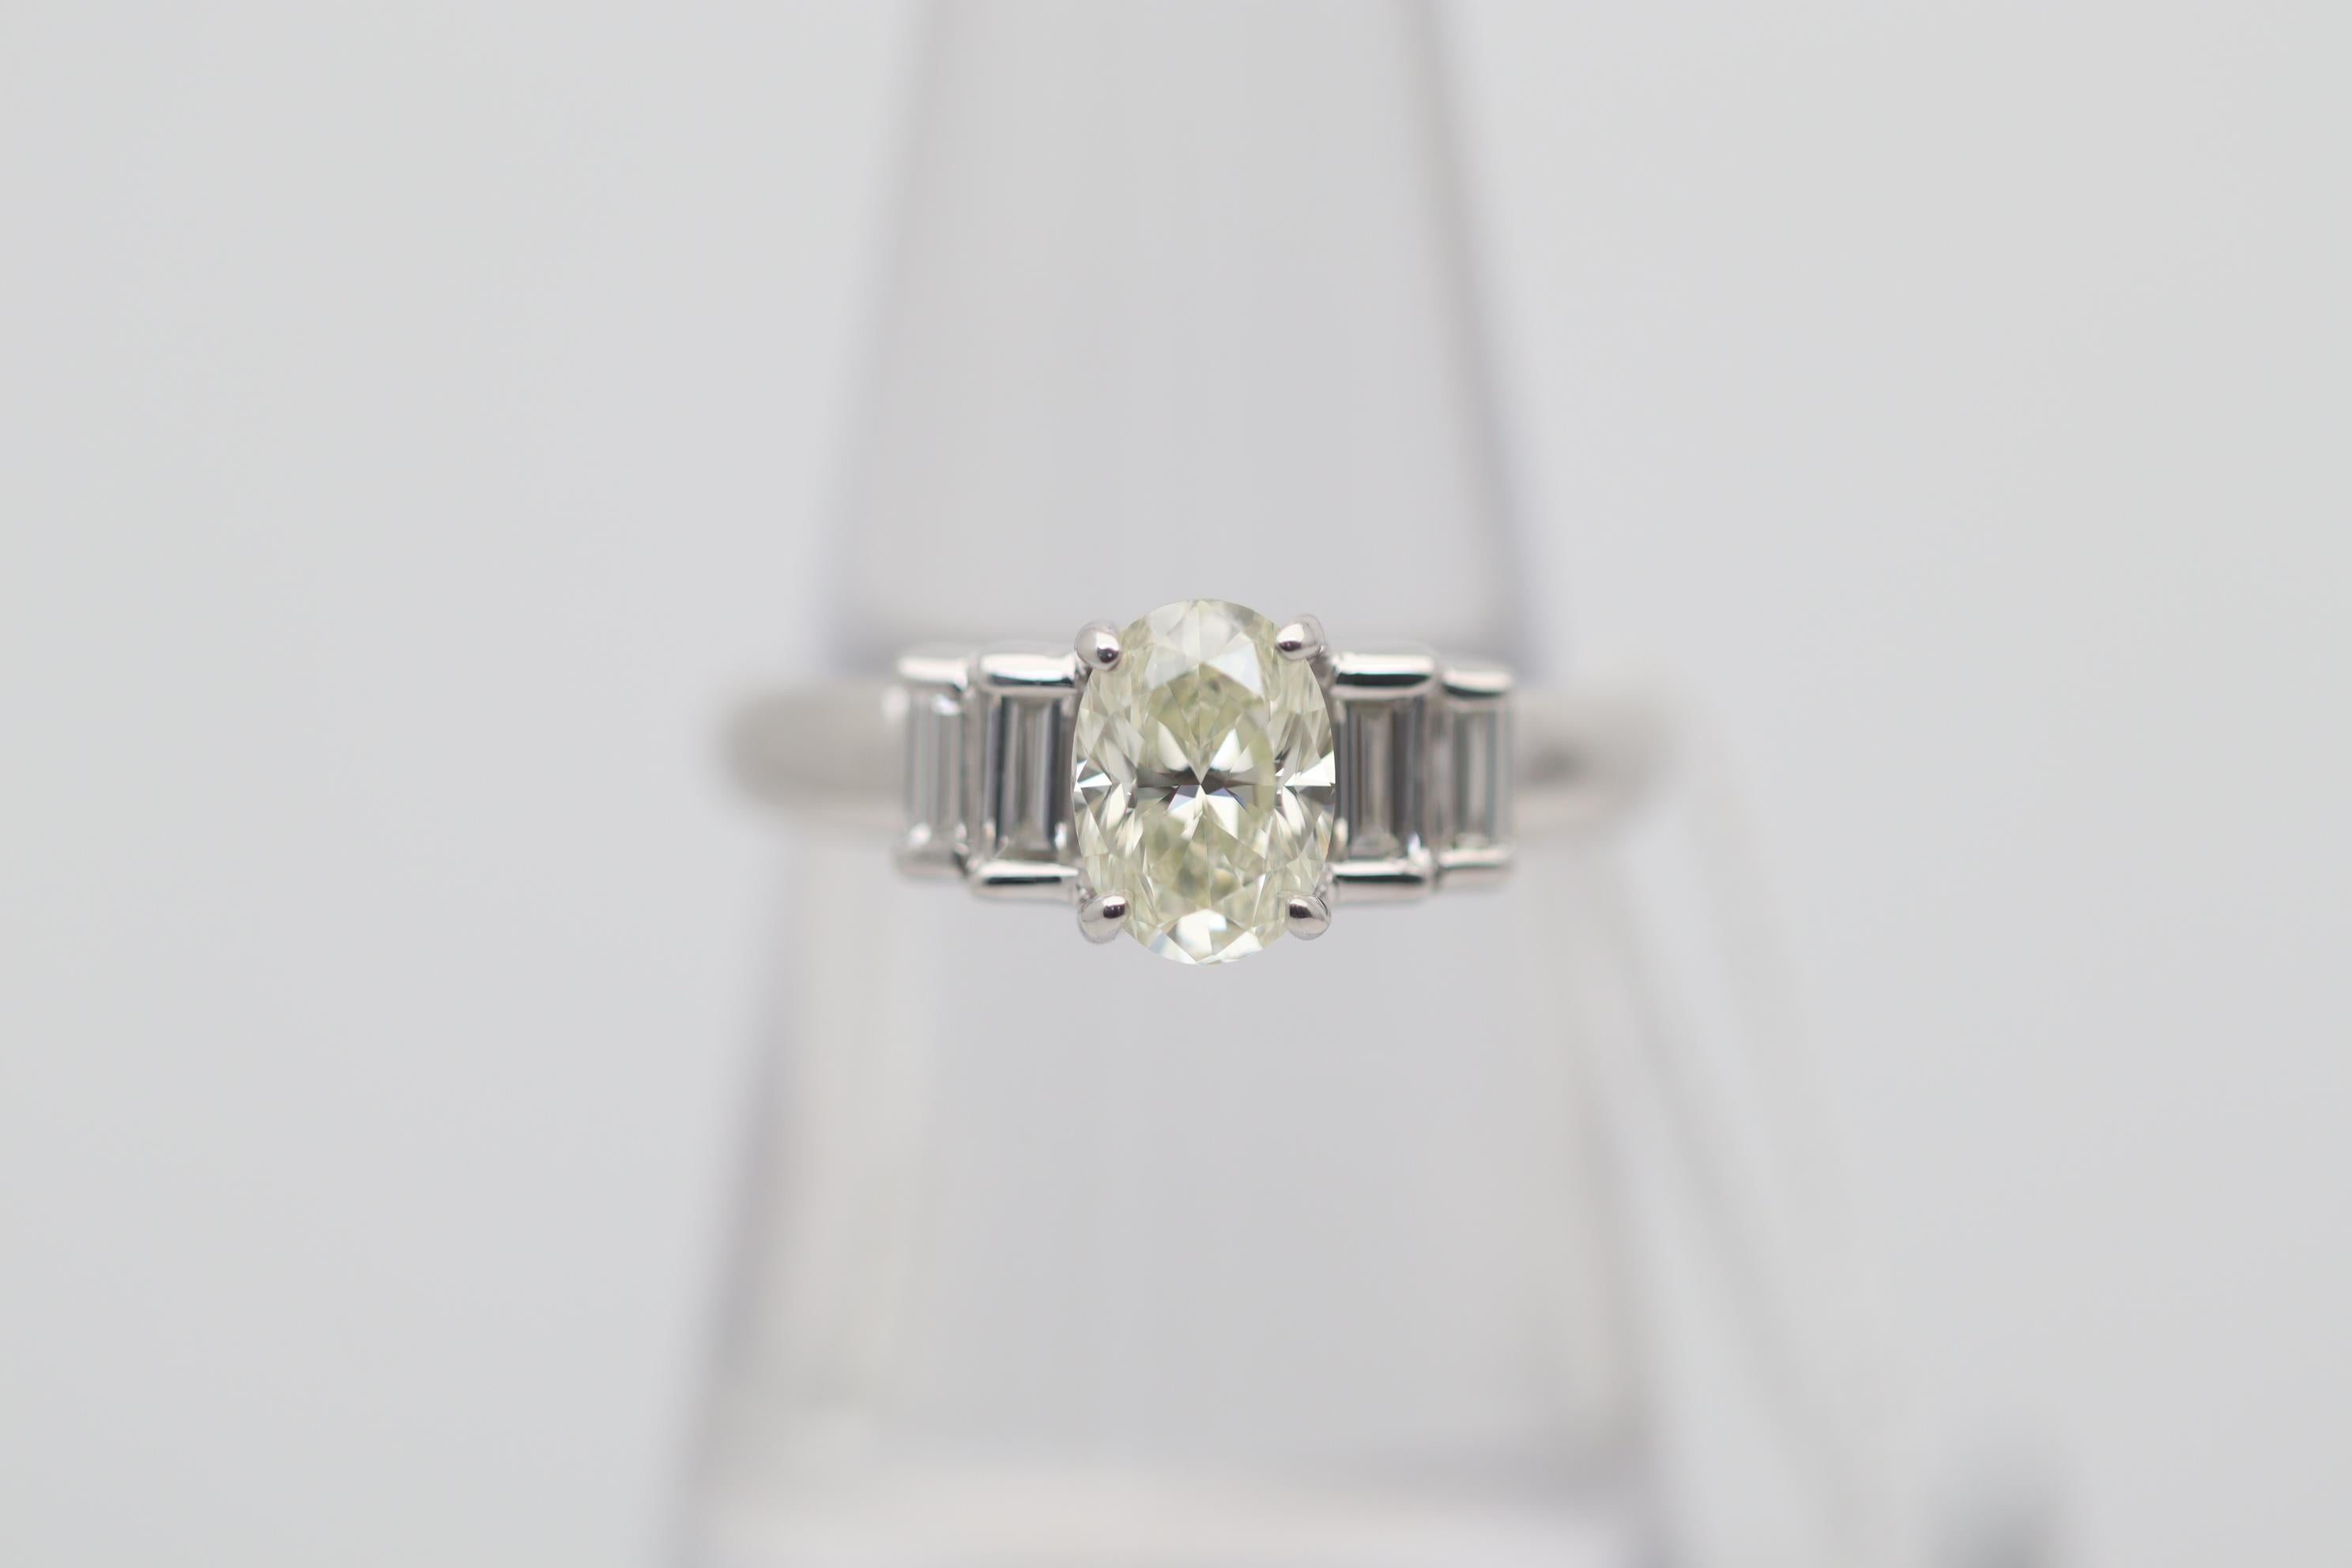 Ein klassischer und stilvoller Verlobungsring mit einem ovalen Diamanten von 1,04 Karat. Er hat eine ausgefallene, sehr hellgelbe Farbe und eine hohe Reinheit (VS2), wodurch der Stein augenrein und ohne sichtbare Einschlüsse ist. Ergänzt wird er